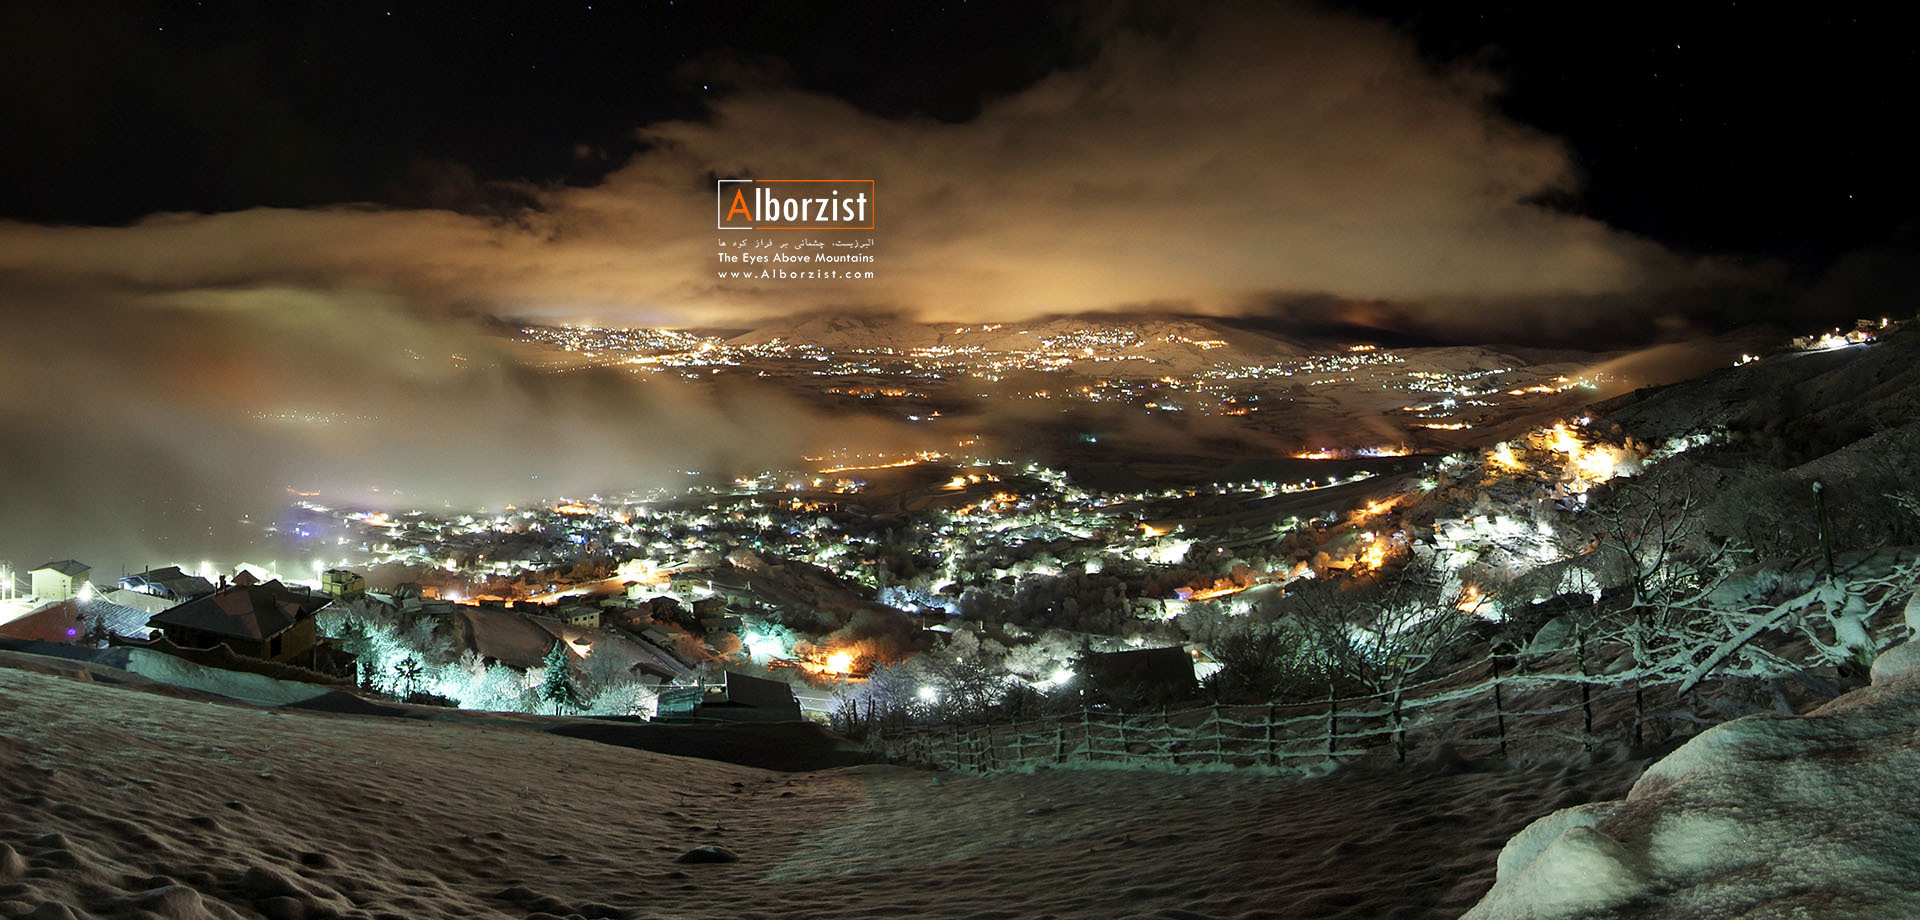  شهر کلاردشت در شب زمستانی